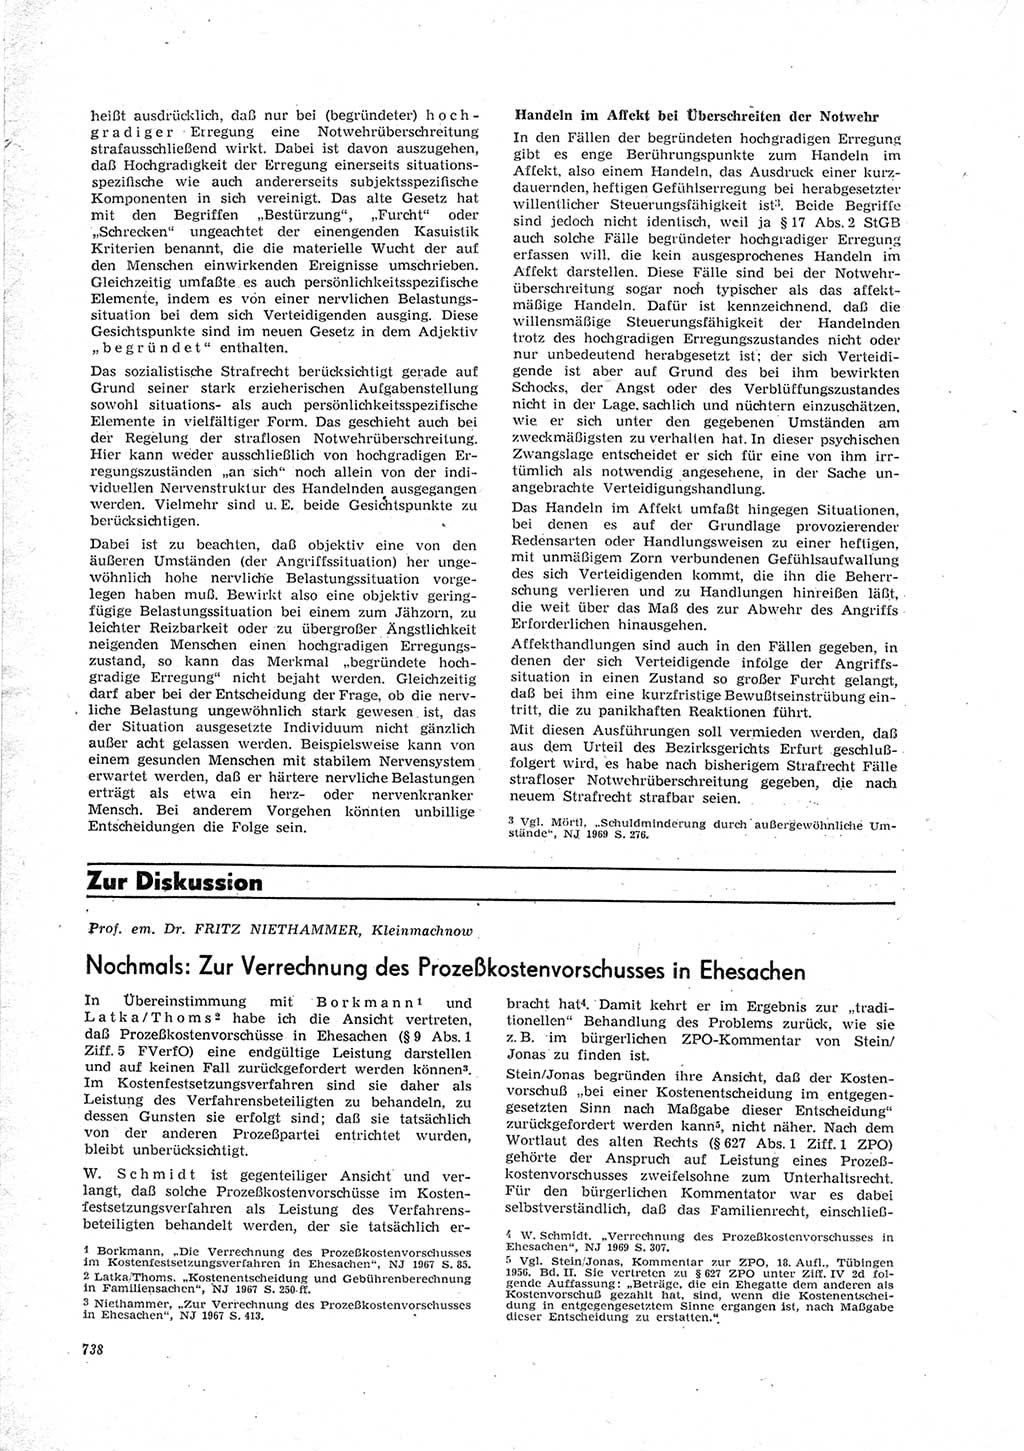 Neue Justiz (NJ), Zeitschrift für Recht und Rechtswissenschaft [Deutsche Demokratische Republik (DDR)], 23. Jahrgang 1969, Seite 738 (NJ DDR 1969, S. 738)